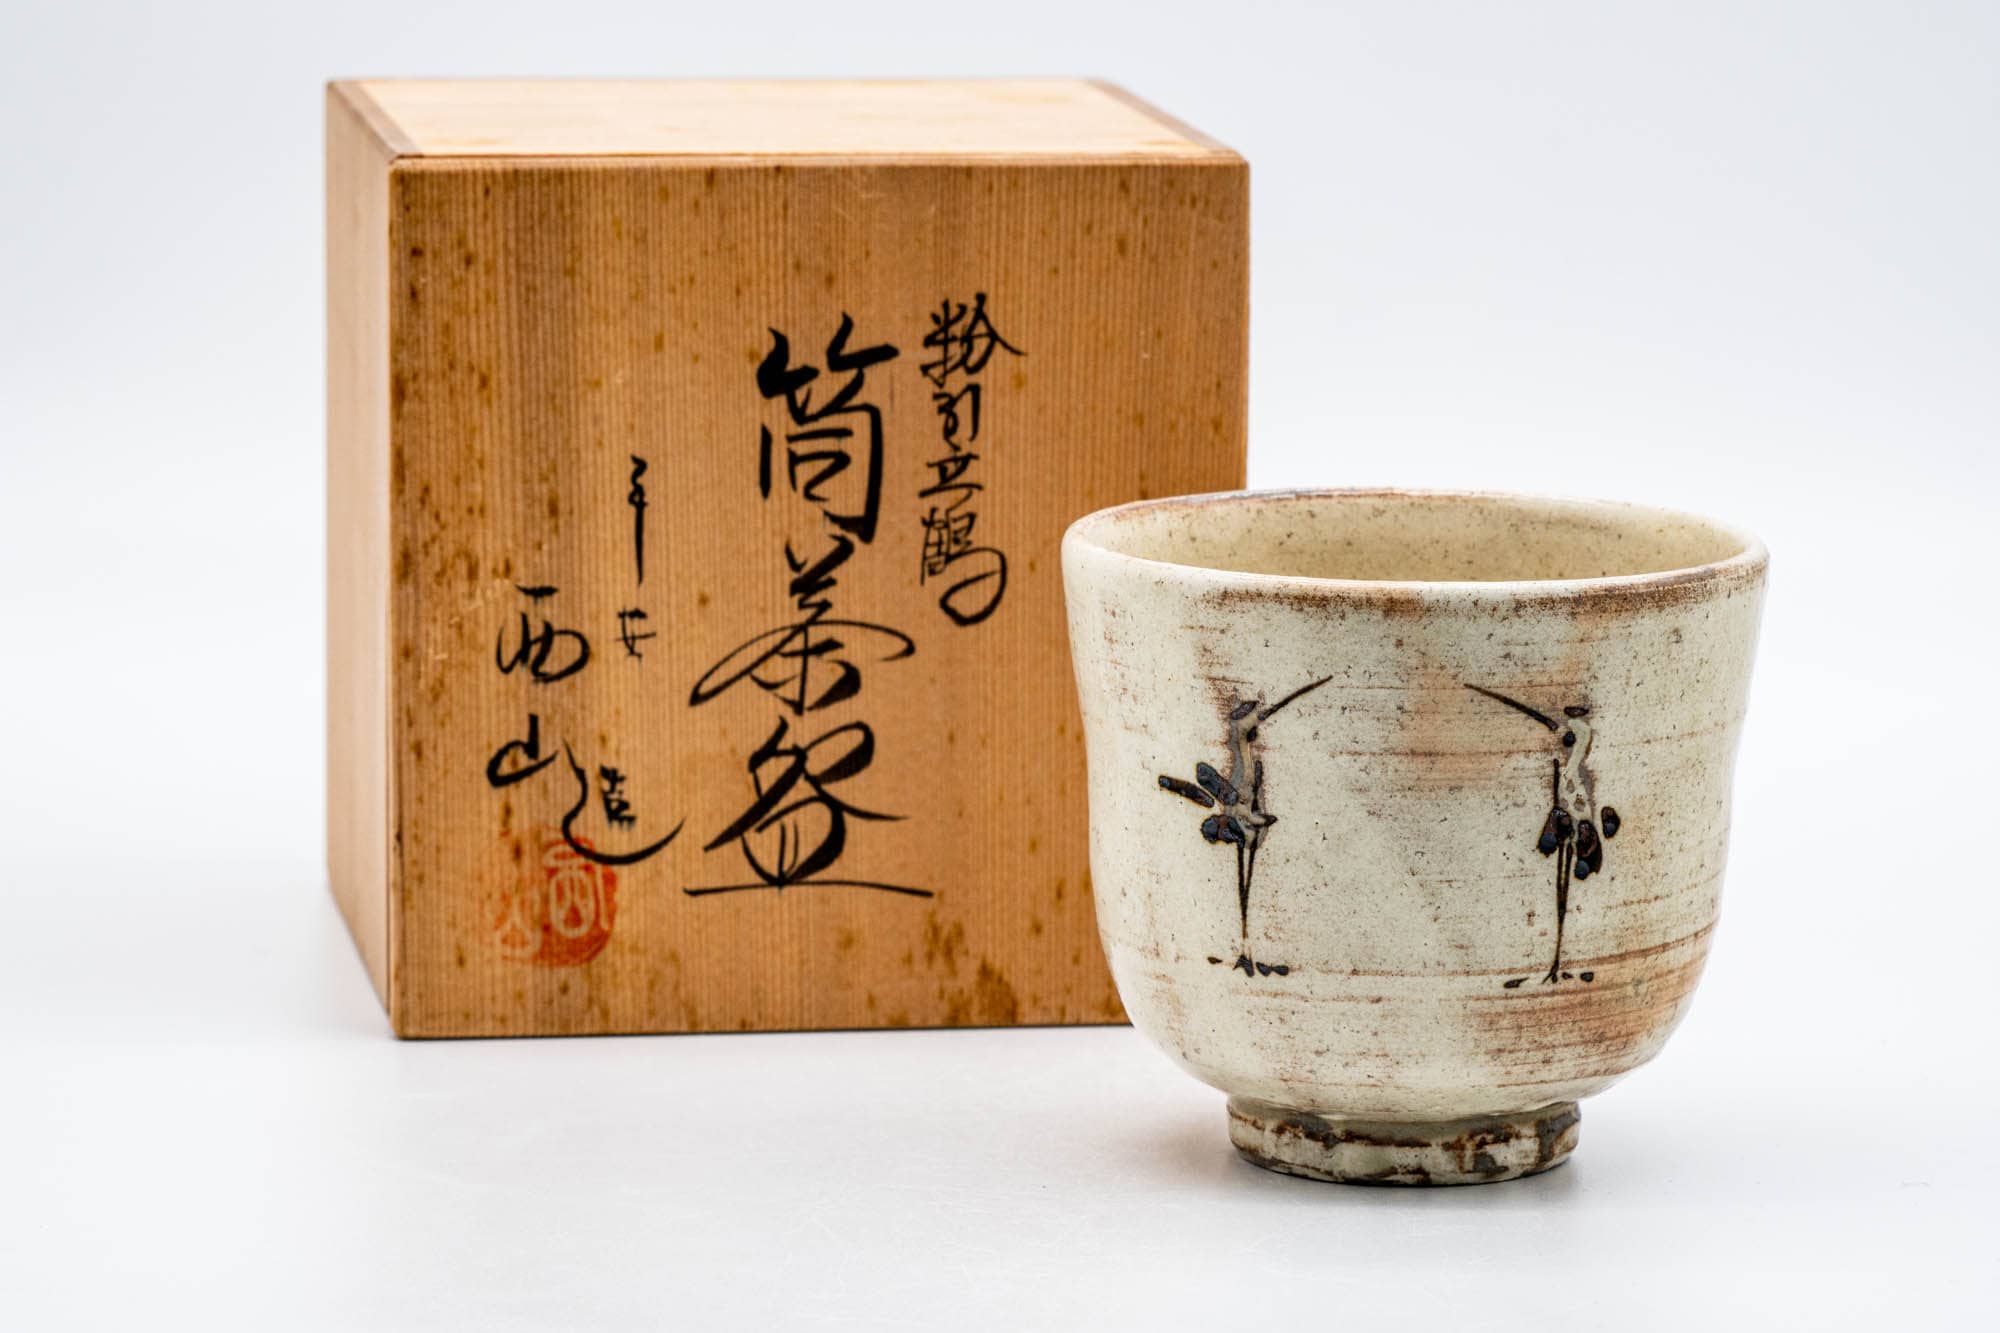 Japanese Matcha Bowl - 平安西山 Heian Nishiyama - 西山窯 Nishiyama Kiln - Kohiki Glazed Cranes Kiyomizu-yaki Chawan - 250ml